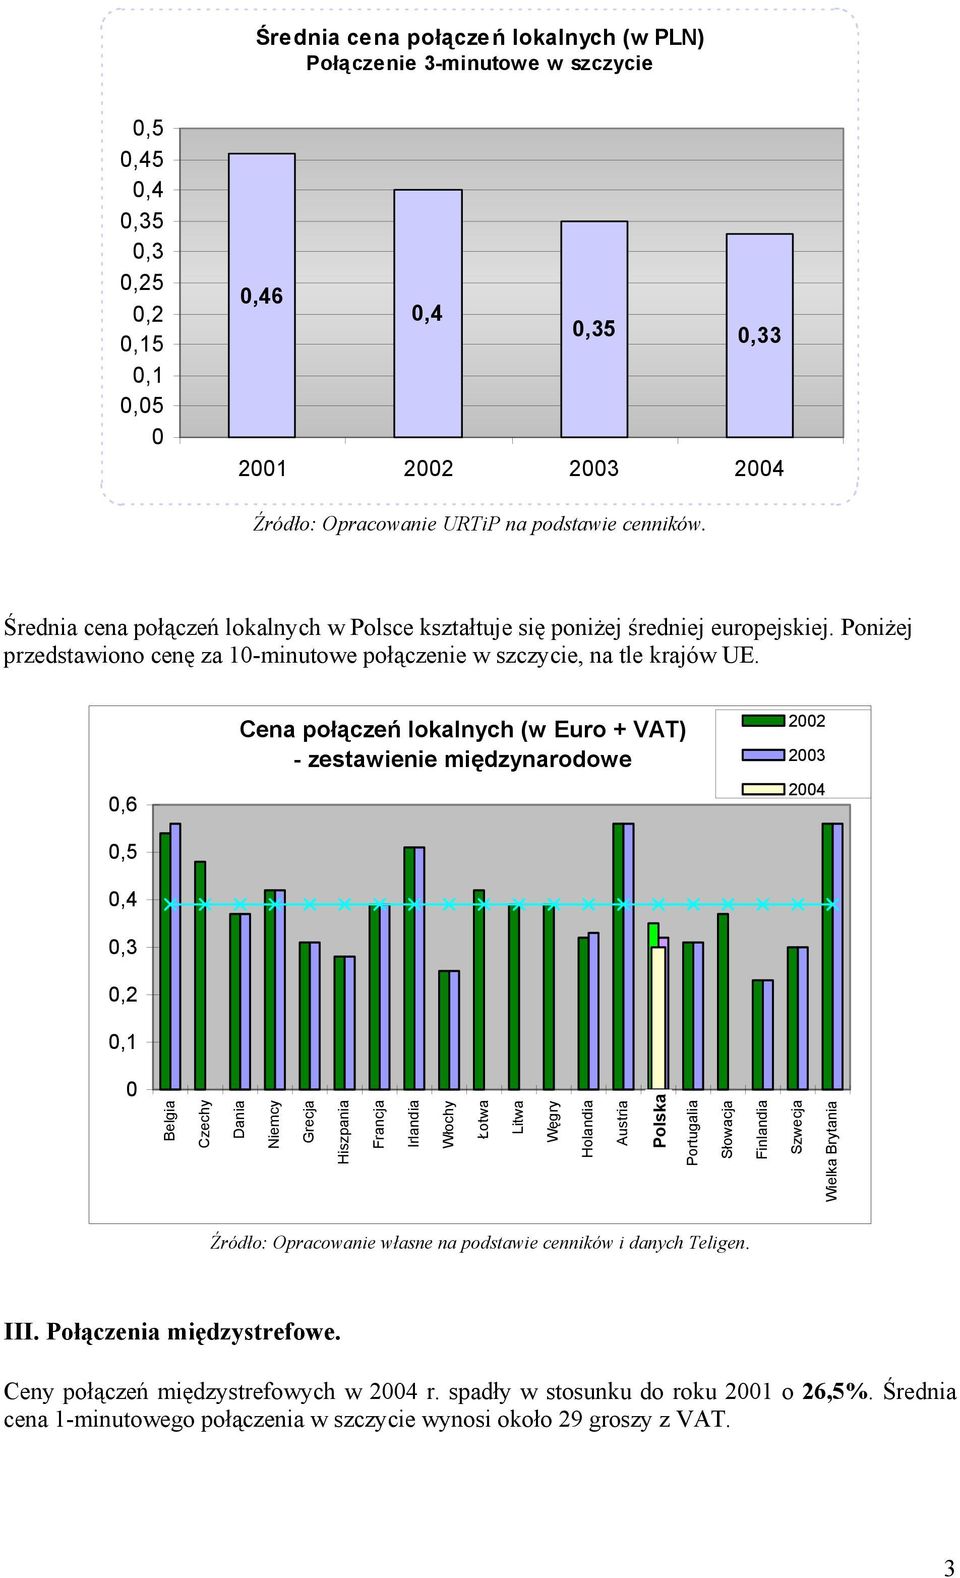 0,6 0,5 0,4 0,3 0,2 0,1 Cena połączeń lokalnych (w Euro + VAT) - zestawienie międzynarodowe 2002 2003 2004 0 Belgia Czechy Dania Niemcy Grecja Hiszpania Francja Irlandia Włochy Łotwa Litwa Węgry